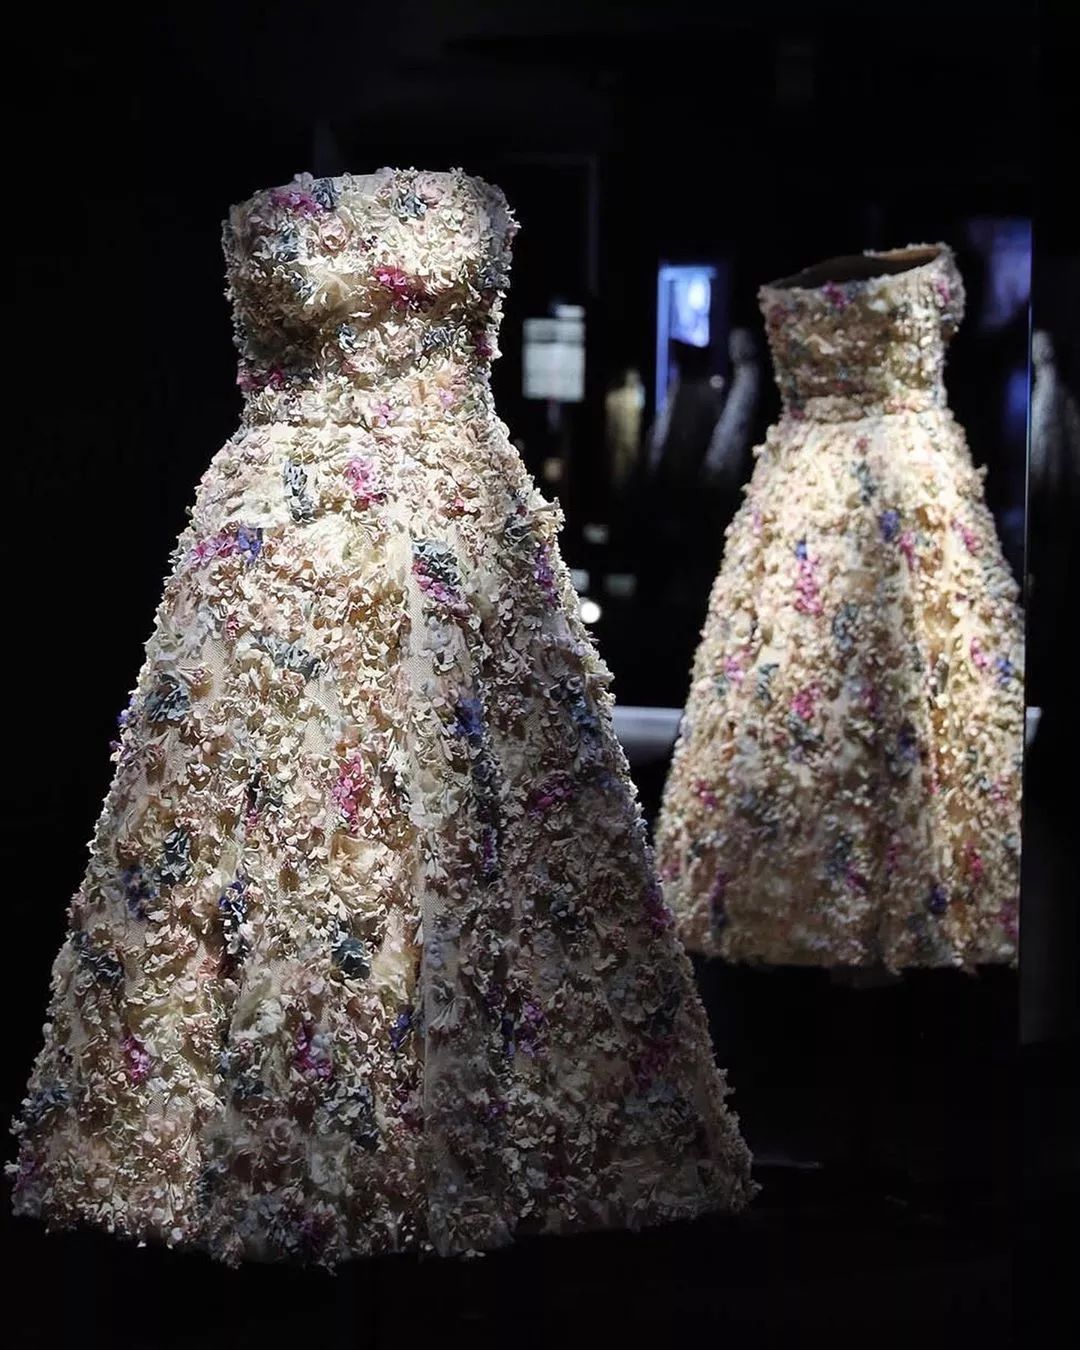 为什么说穿上Dior裙子是每个女孩的梦想？